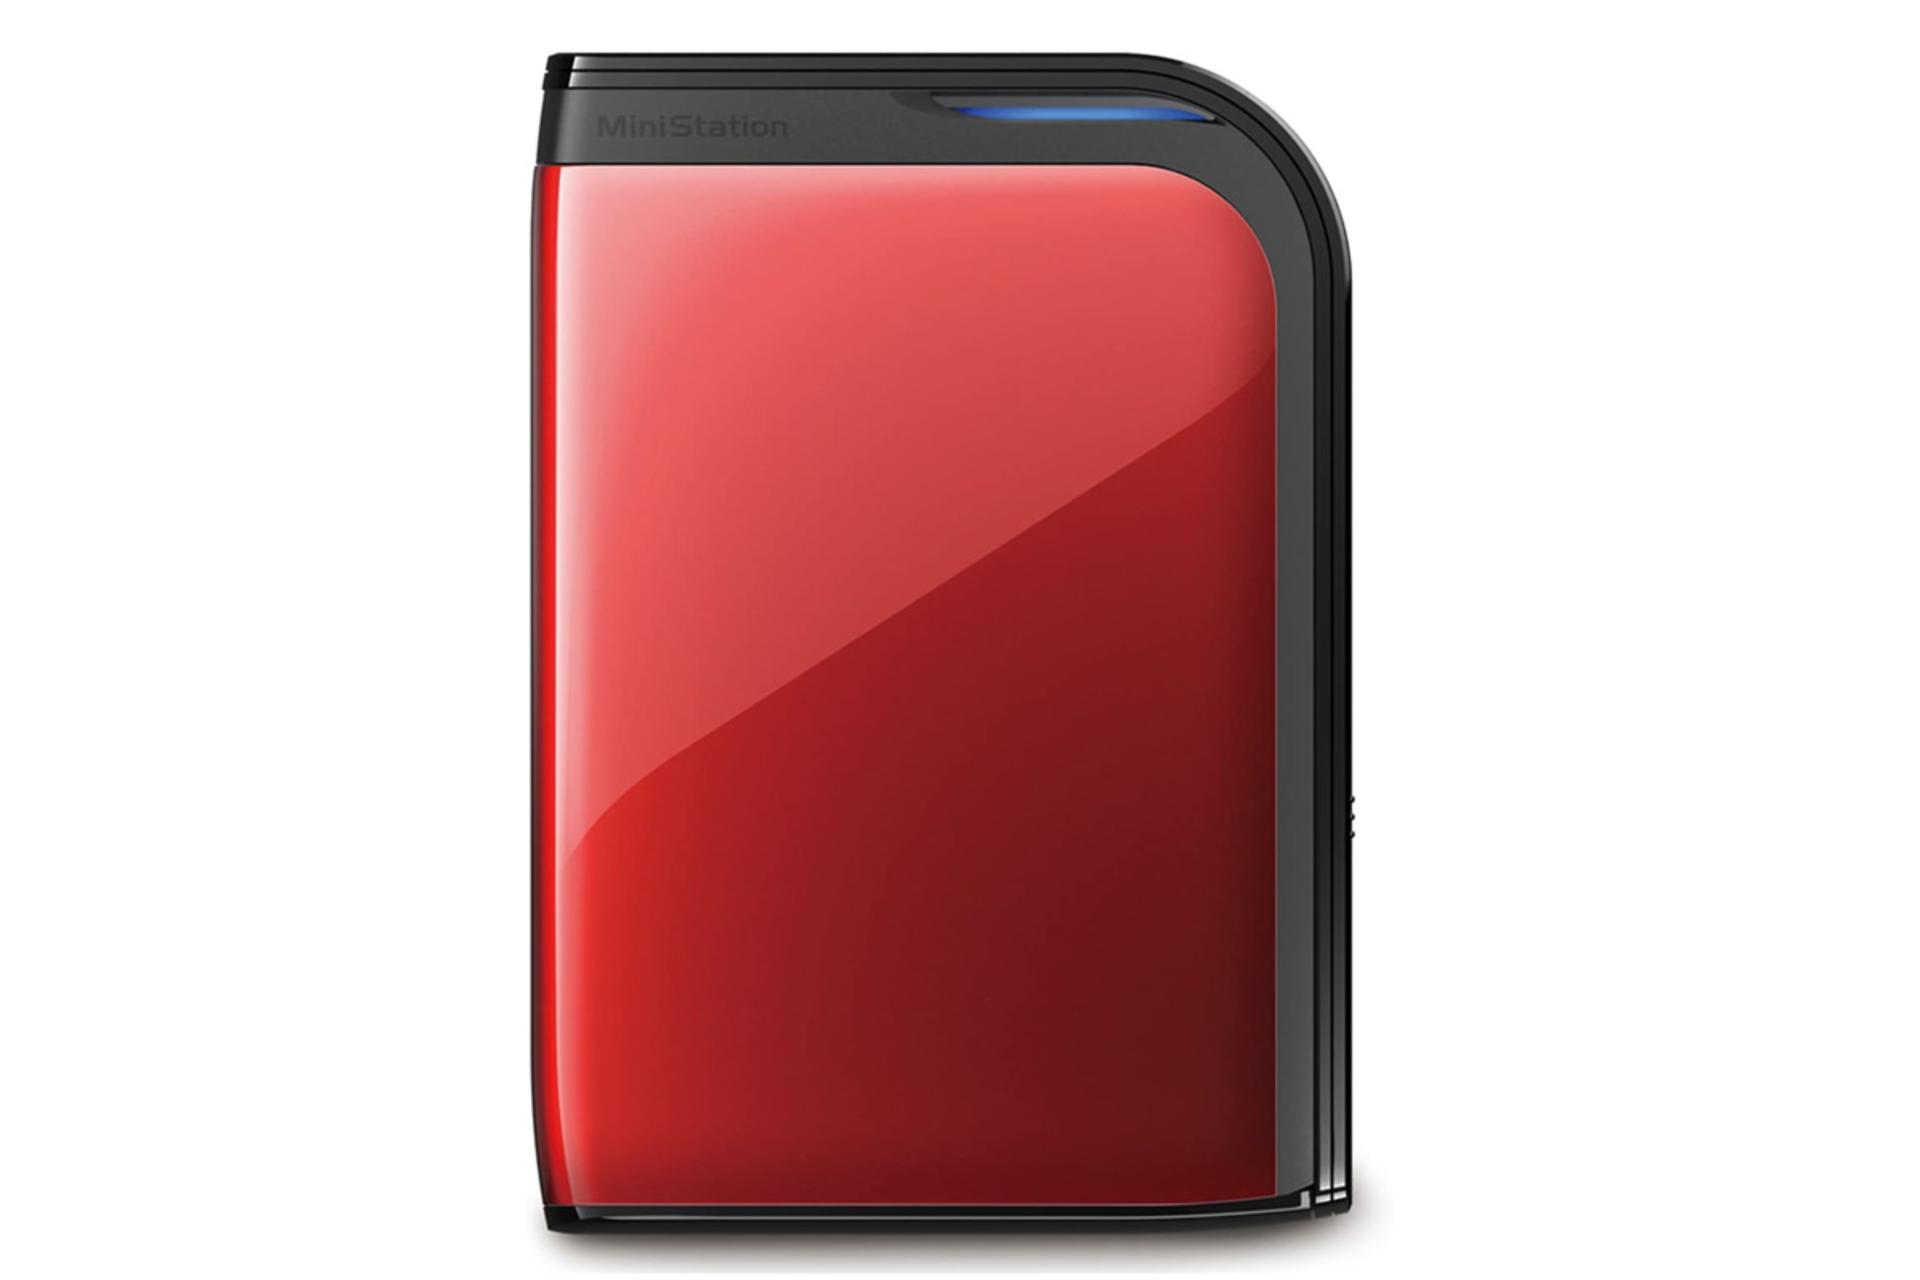 نمای جلو هارد دیسک بوفالو HD-PZU3 HD-PZ500U3R ظرفیت 500 گیگابایت رنگ قرمز